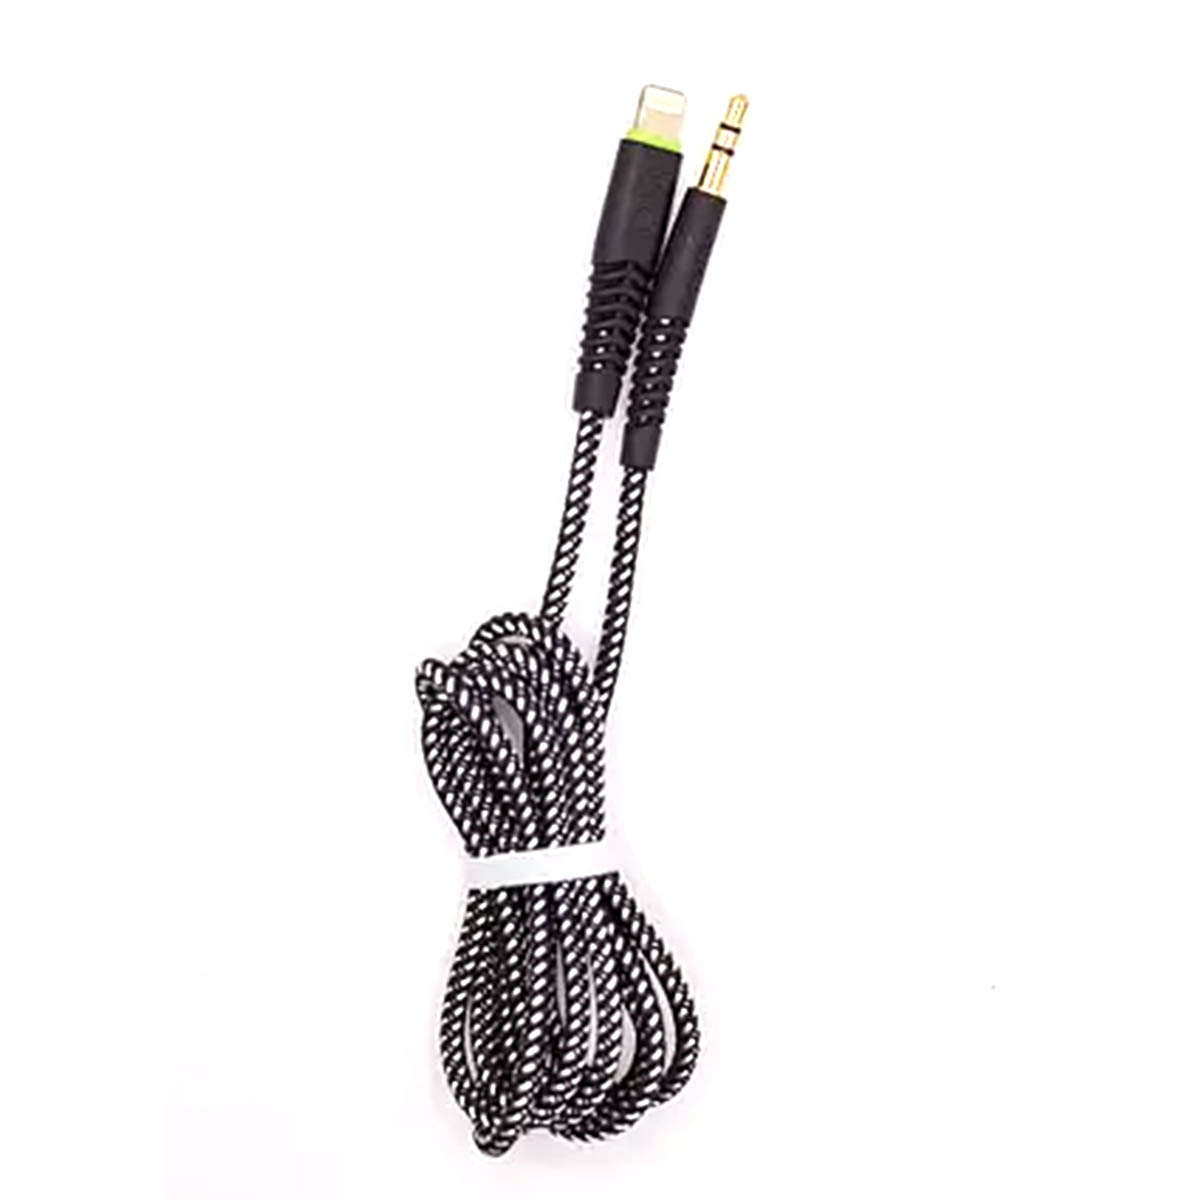 Аудио кабель, переходник BUDI Lightning 8-pin на AUX Jack 3.5 mm, длина 1.2 метра, цвет черный